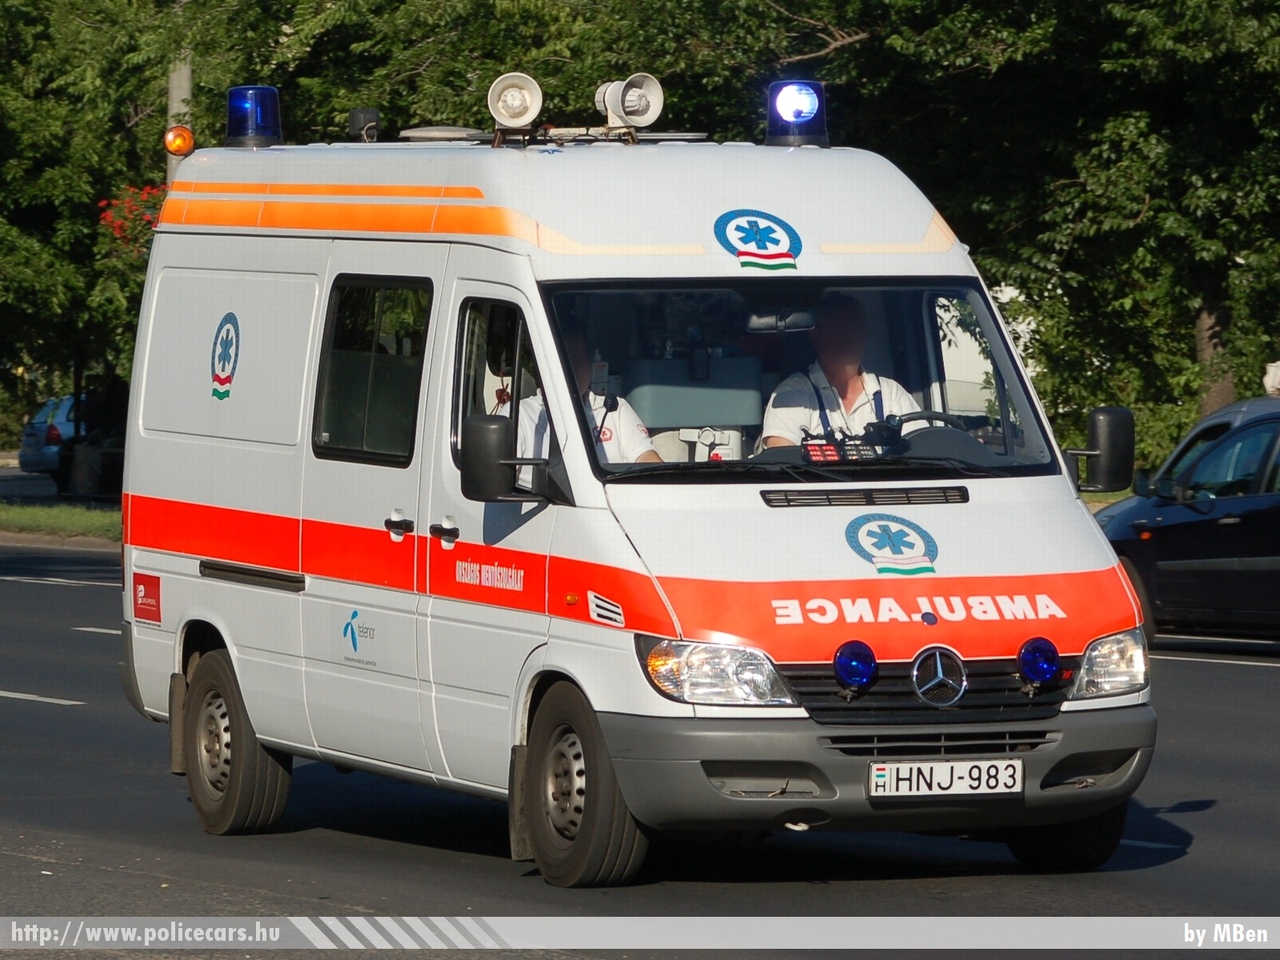 Mercedes Sprinter, fotó: MBen
Keywords: magyar Magyarország mentő mentőautó OMSZ Hungary hungarian ambulance HNJ-983